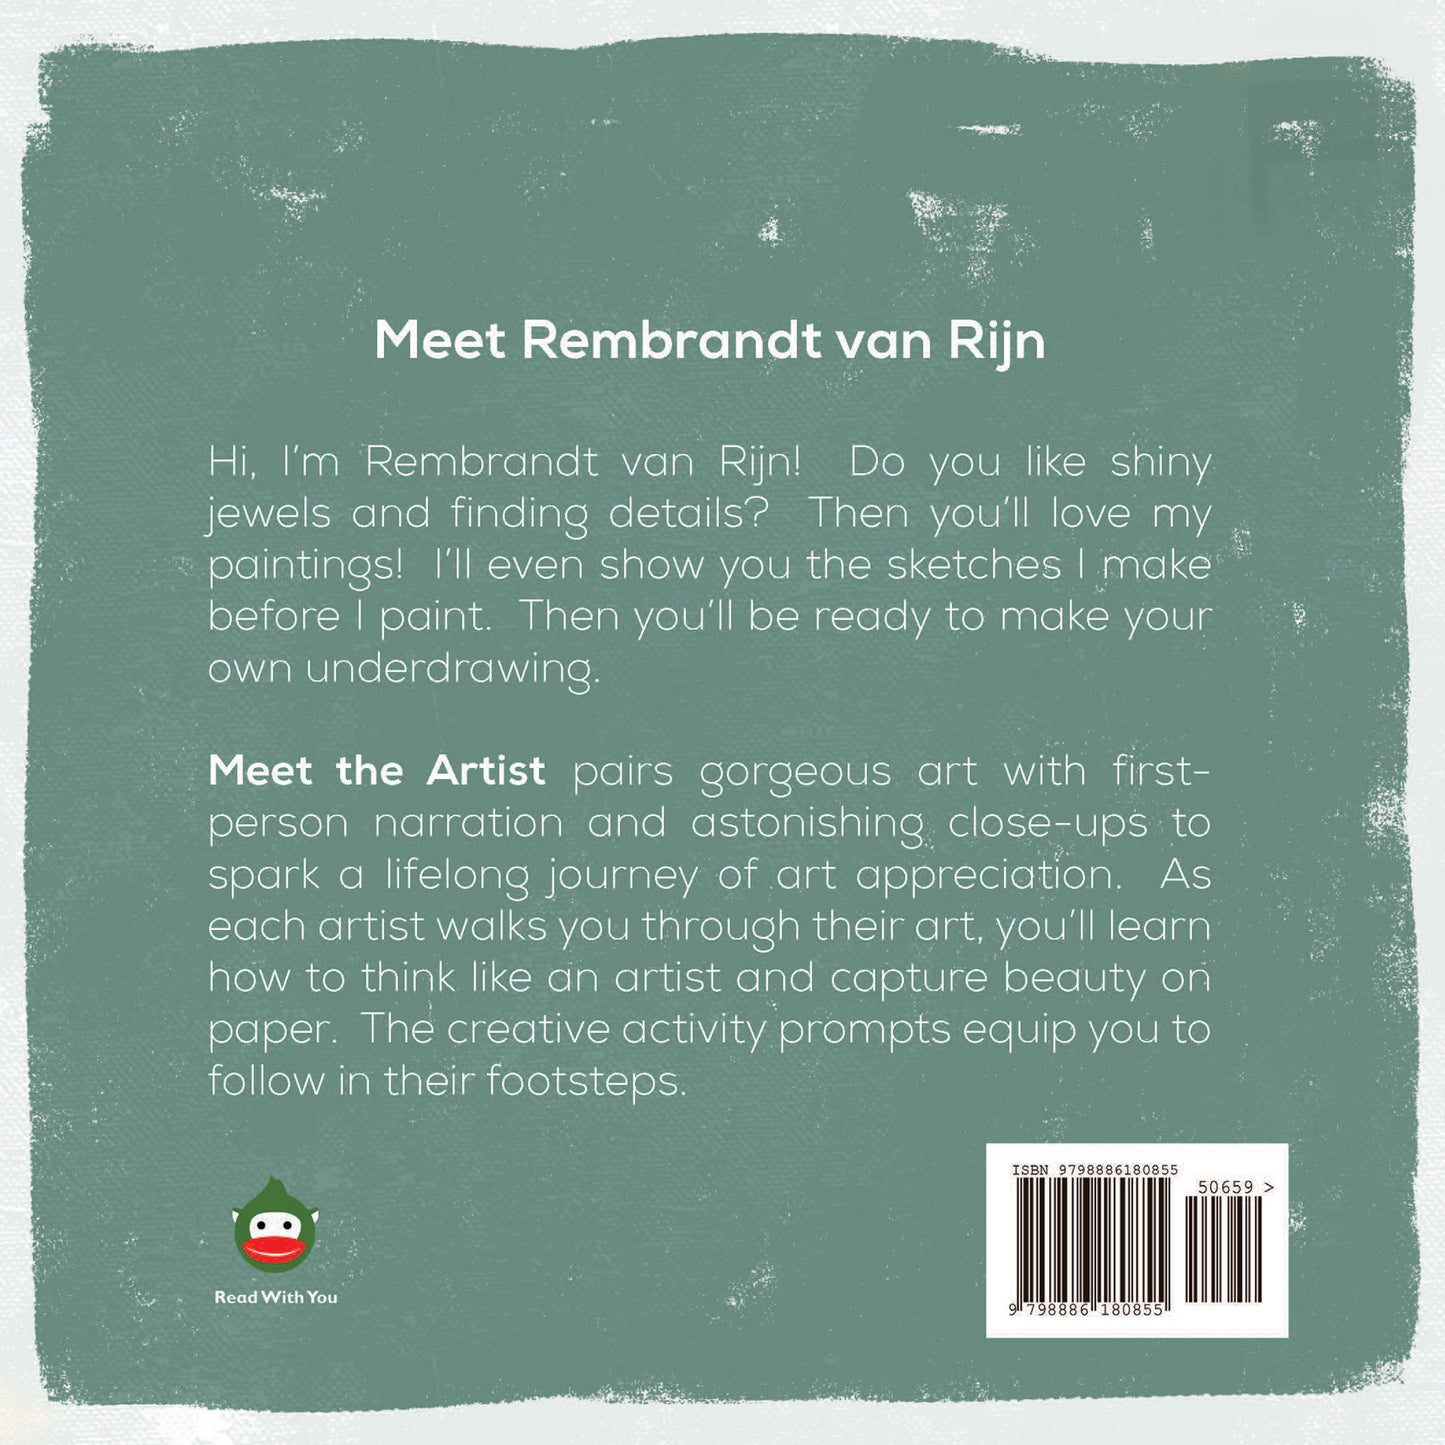 Meet Rembrandt van Rijn